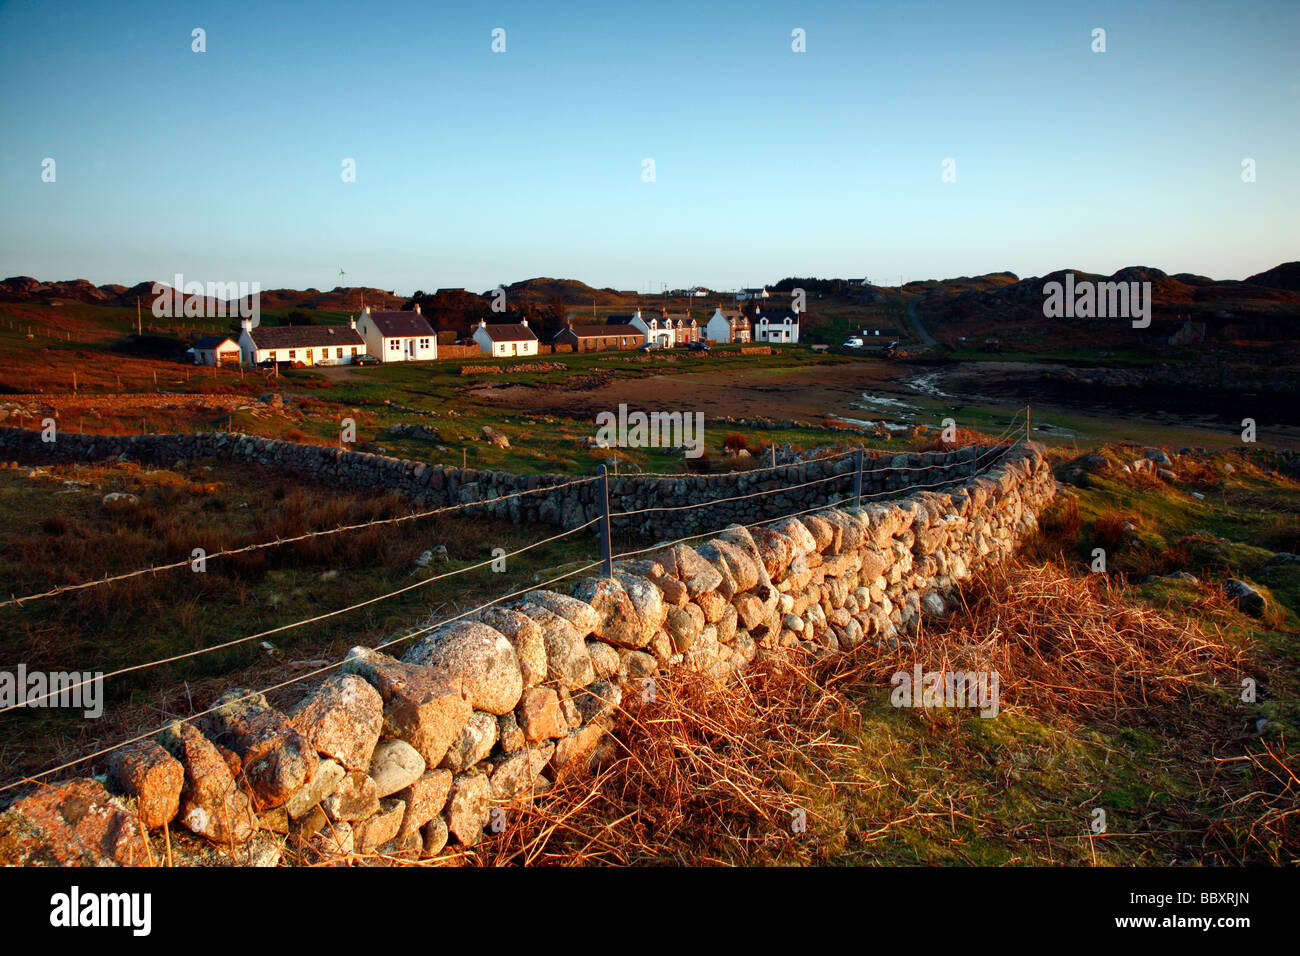 Le hameau éloigné et du port de Kintra,Ross of Mull, île de Mull, Hébrides intérieures, Ecosse, Royaume-Uni. Banque D'Images